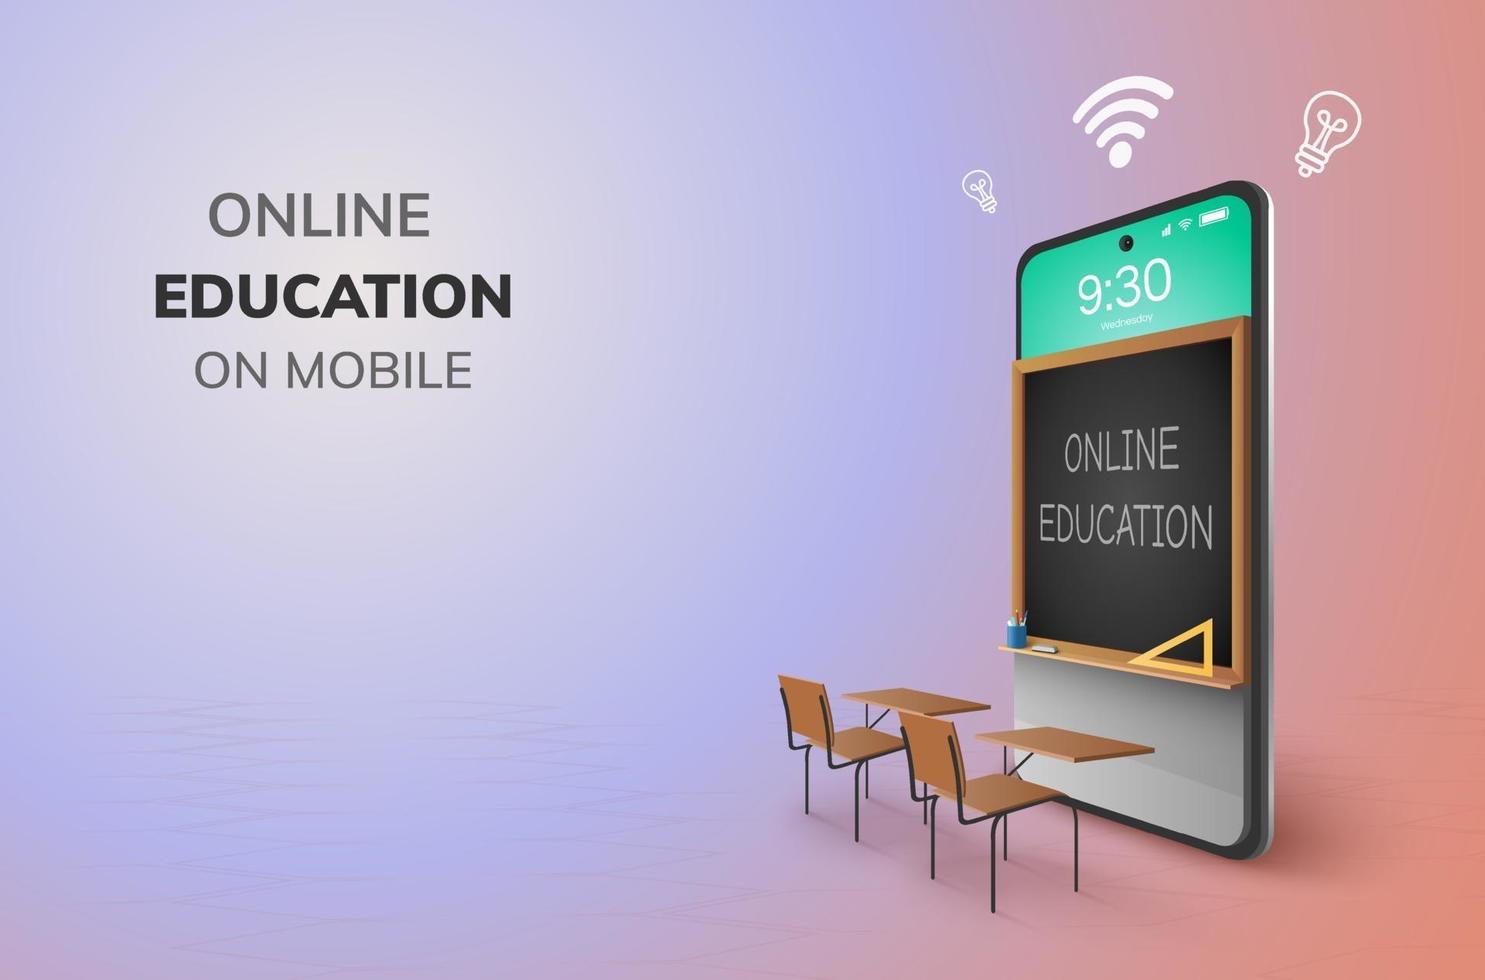 aula digital educación en línea jardín de infantes volver al concepto de escuela. Aprendizaje en el teléfono móvil pizarra niños estudiantes escritorio mesa silla vector